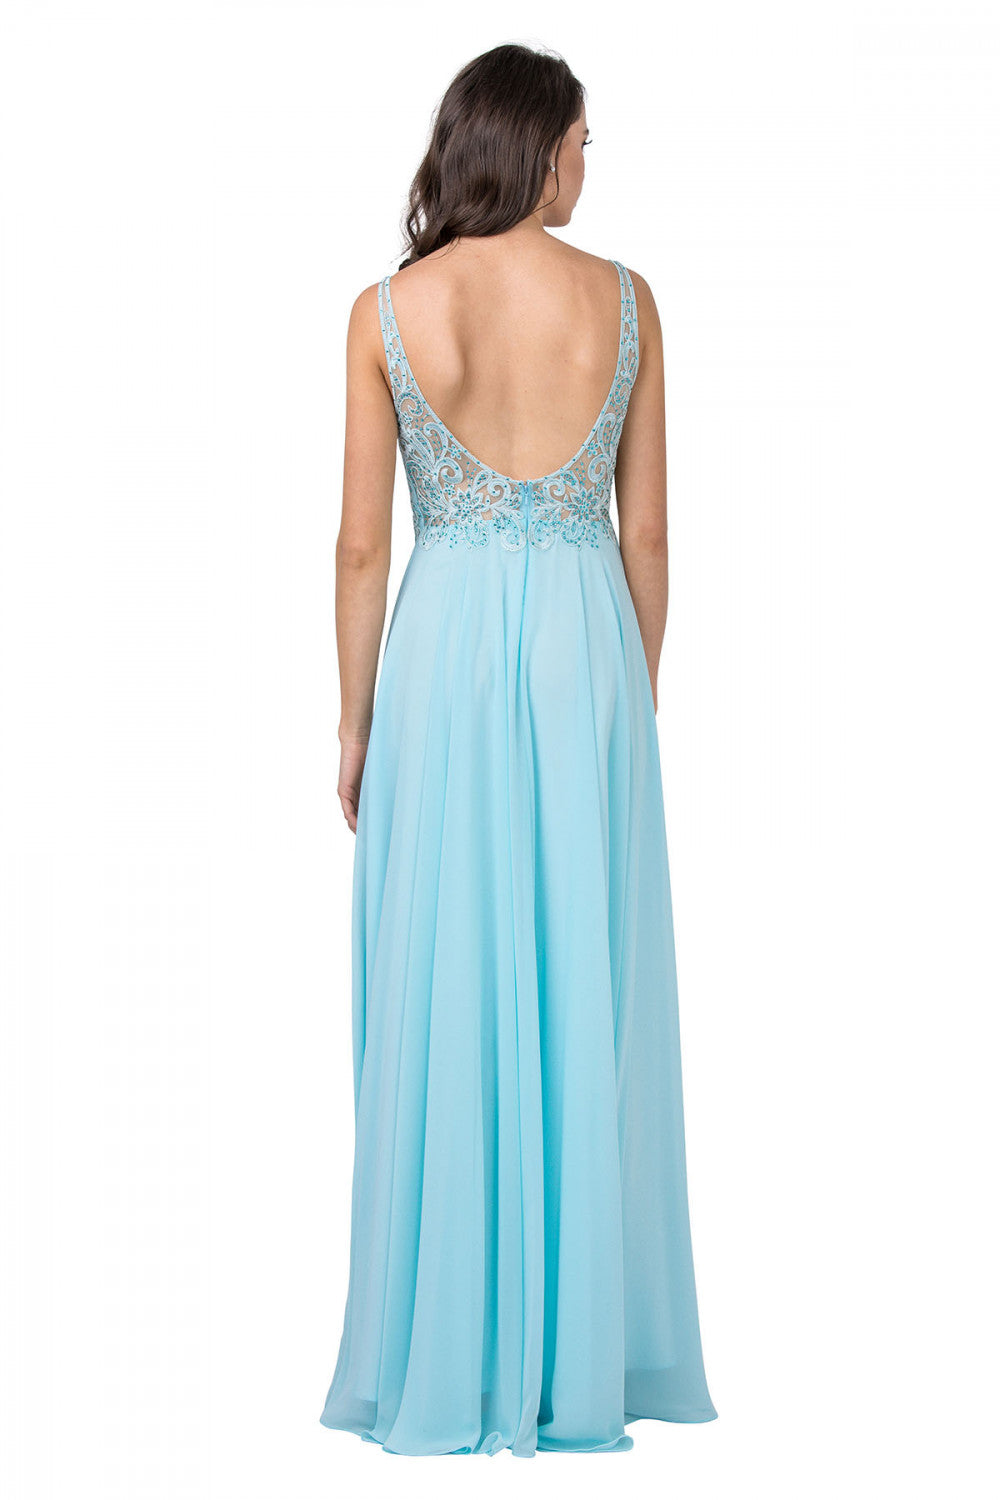 Aspeed Design -L2385 Lace Bodice A-Line Evening Dress